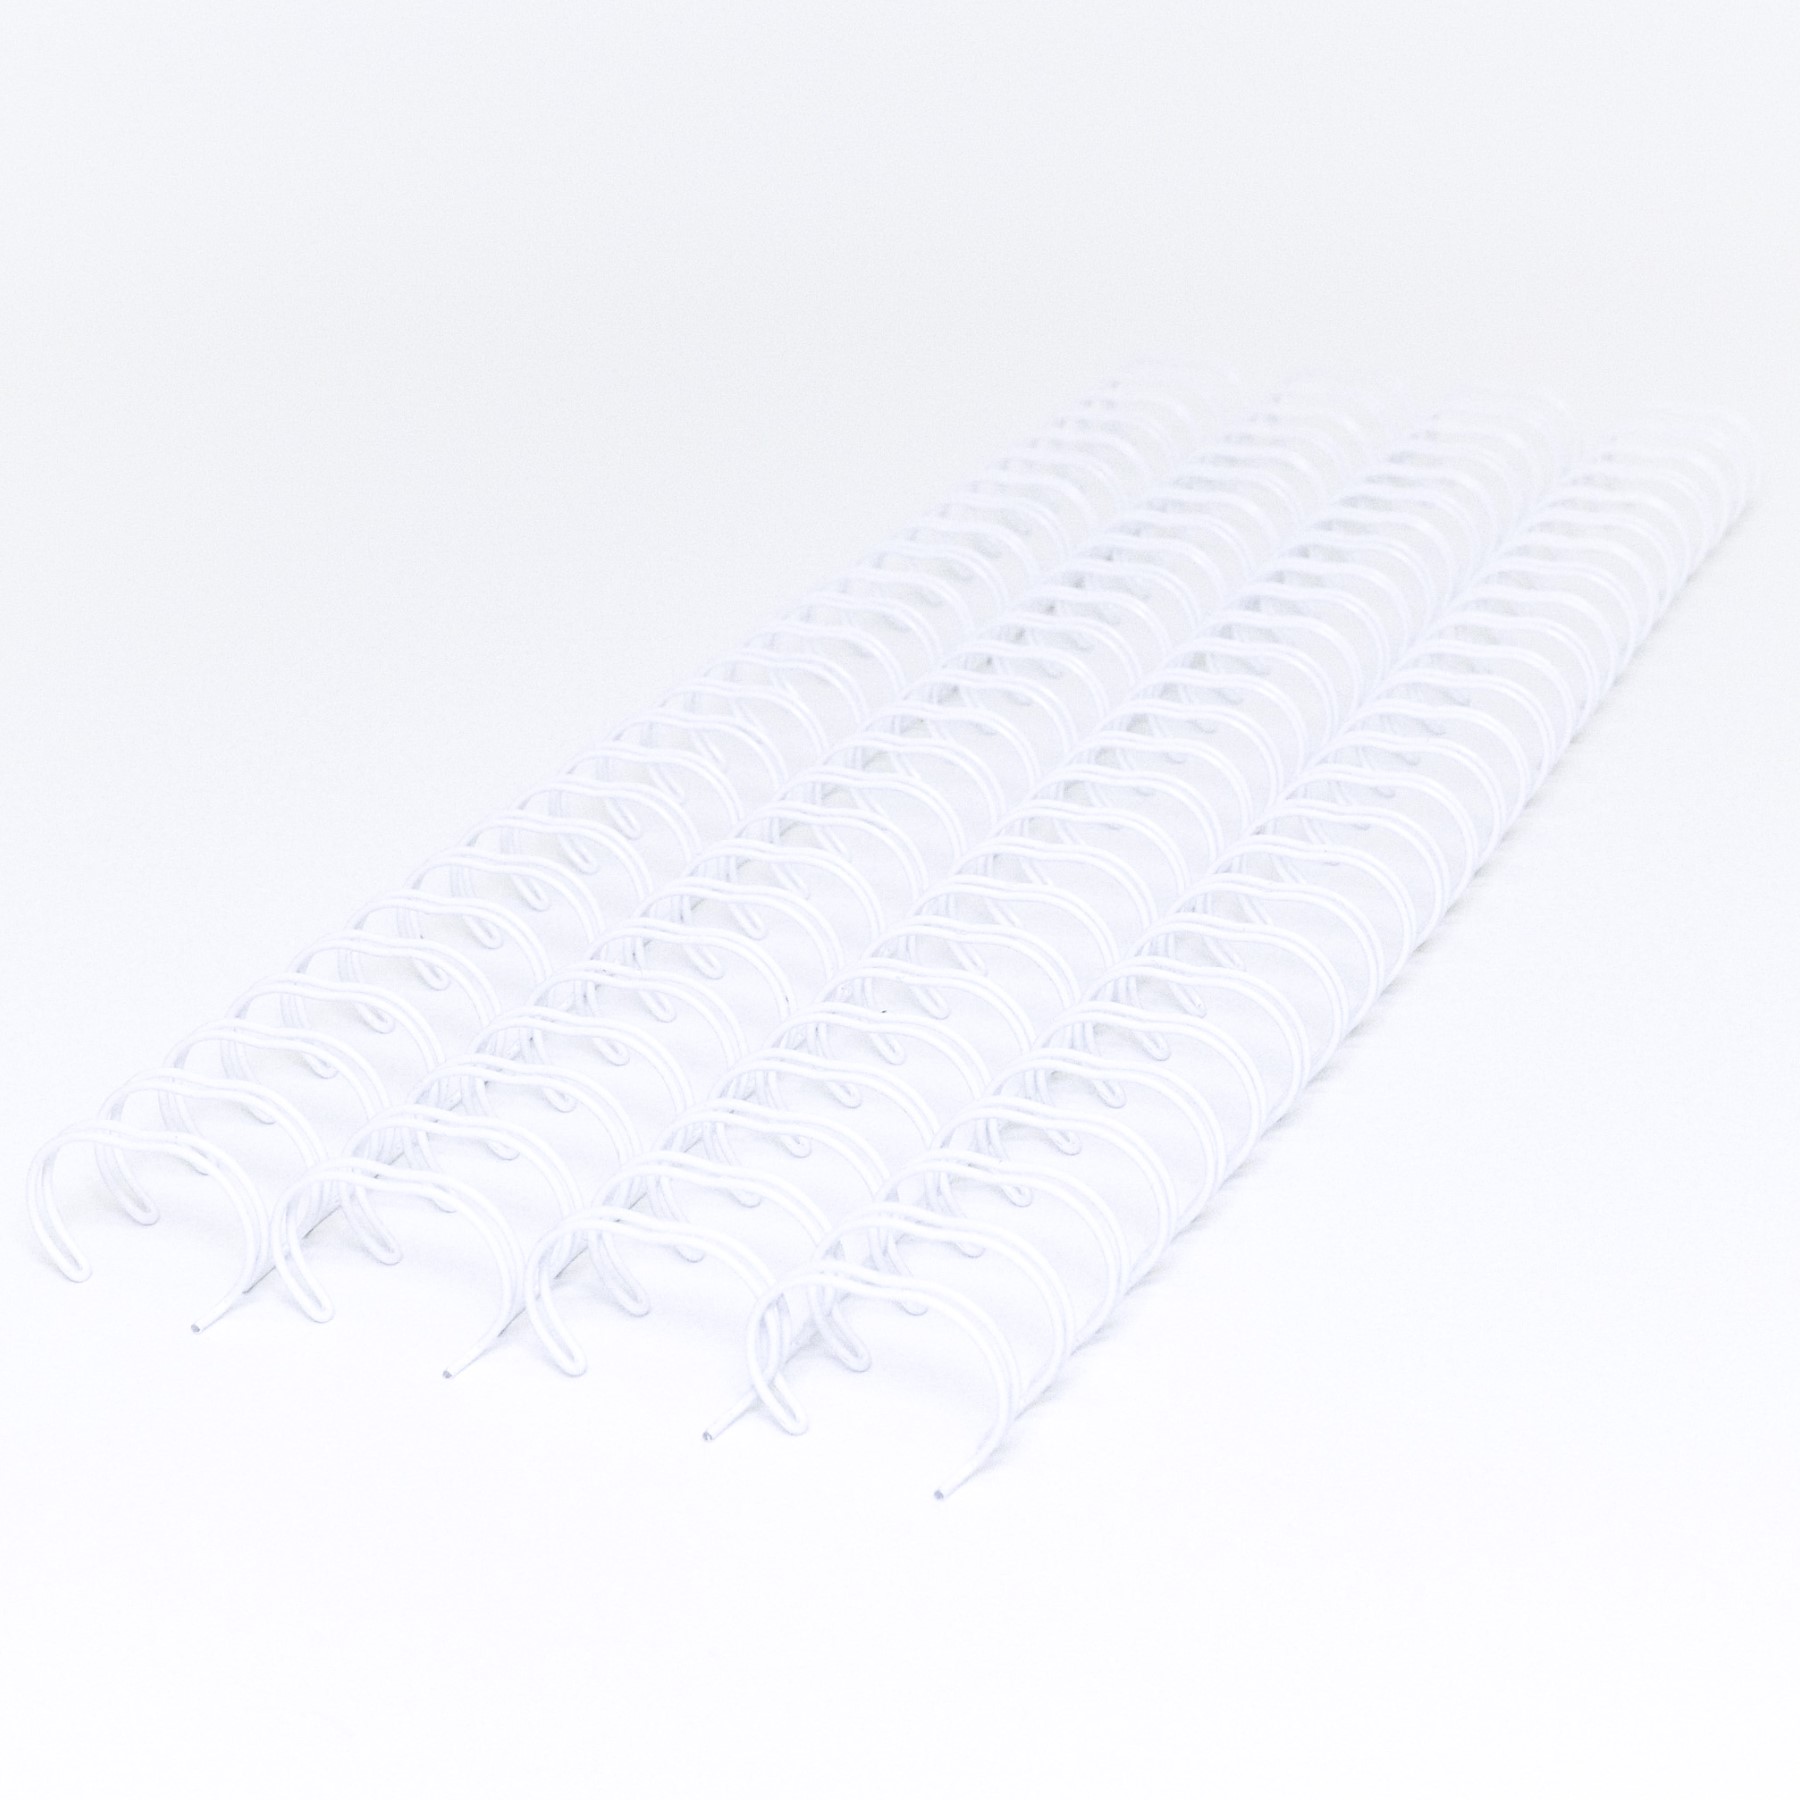 Anillos metálicos doble cero 2:1 - 15,9 mm (5/8") 50 unidades Blanco